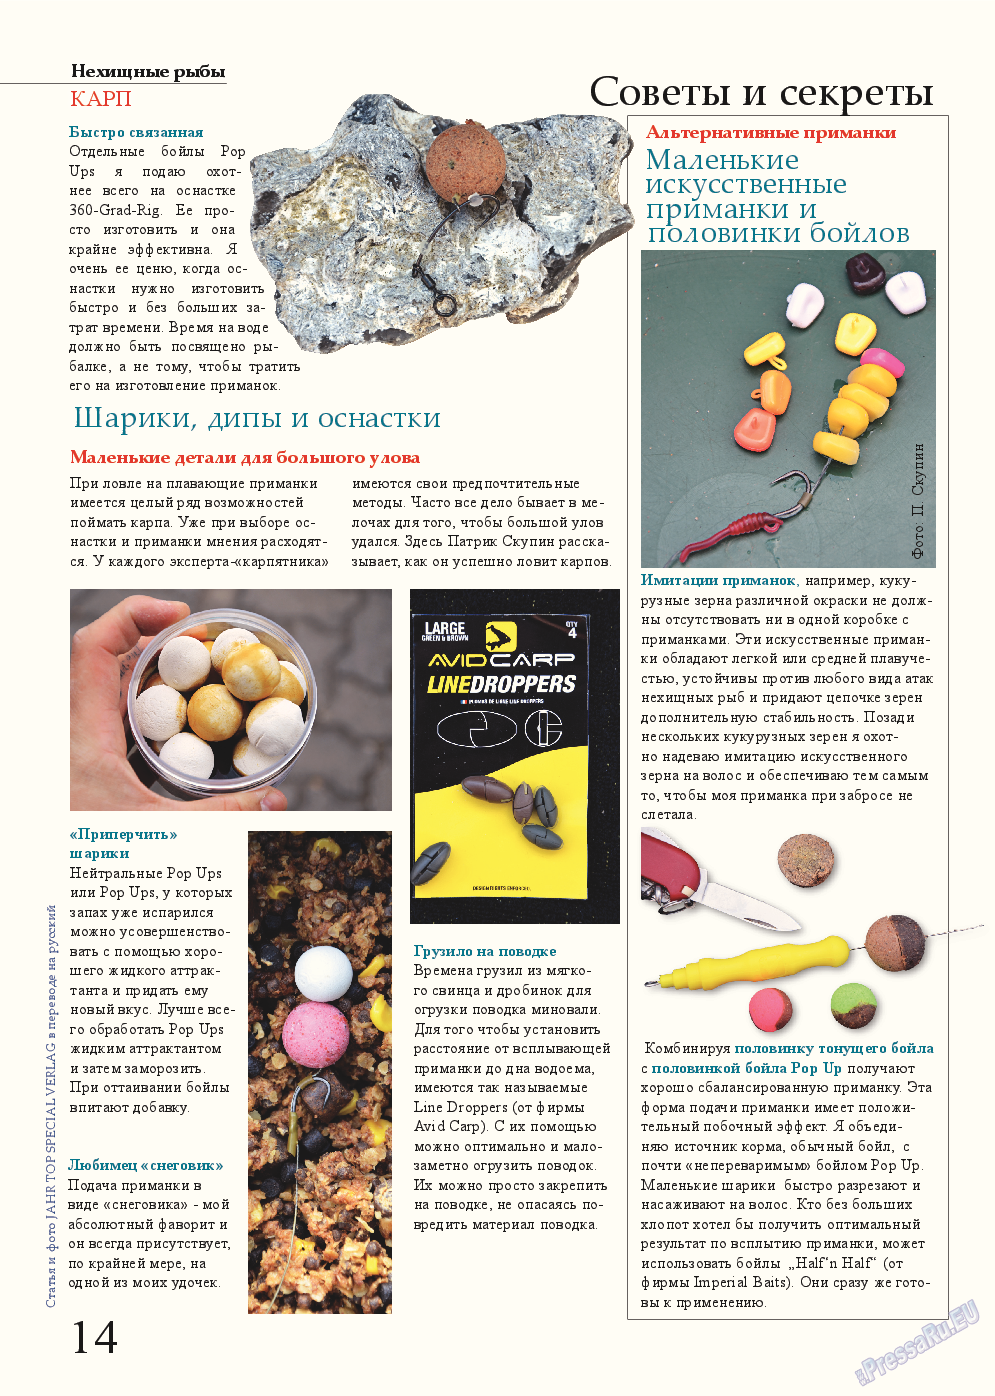 Рыбалка Plus, журнал. 2015 №2 стр.14